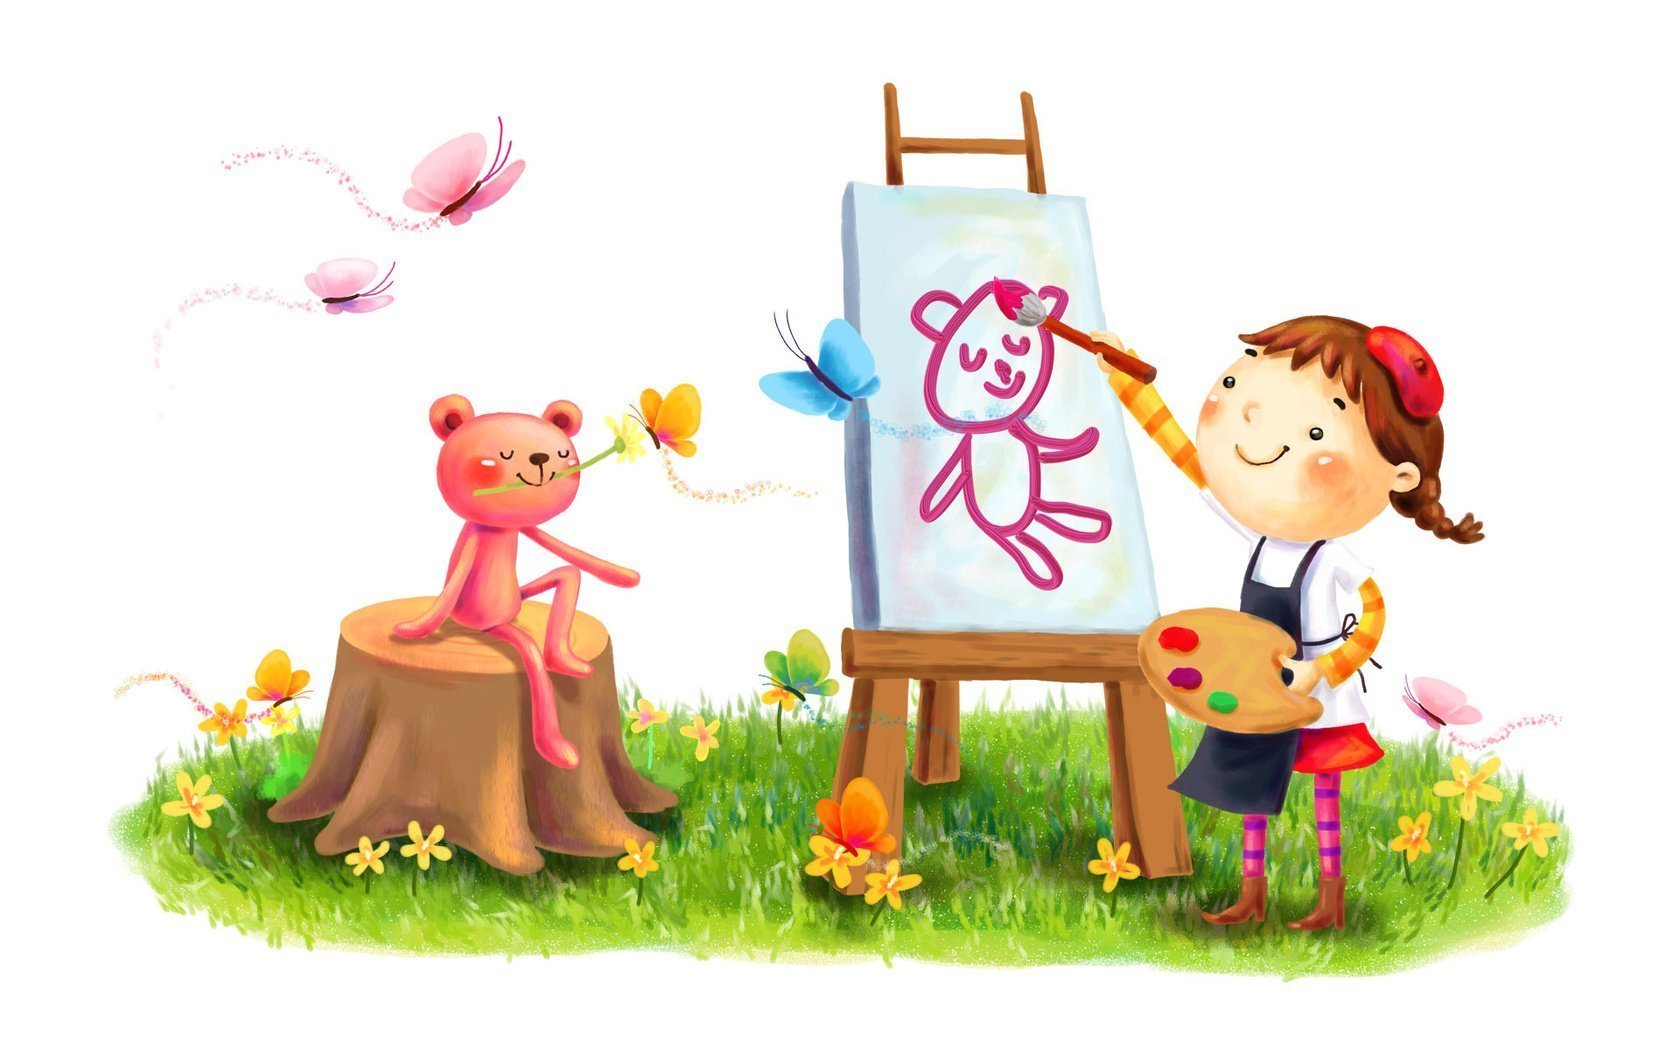 Картинки нарисованные детьми